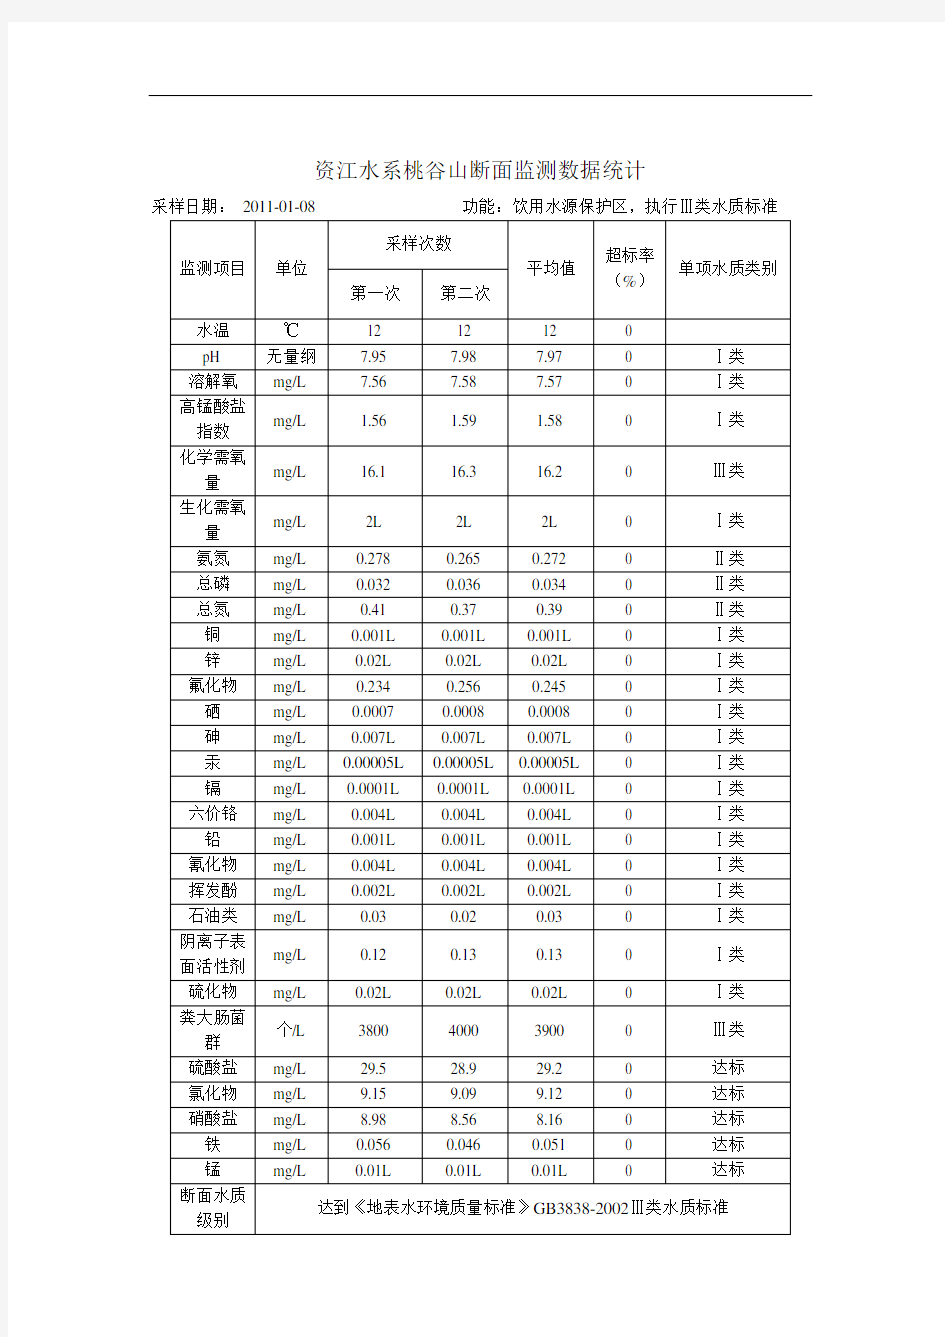 资江水系桃谷山断面监测数据统计